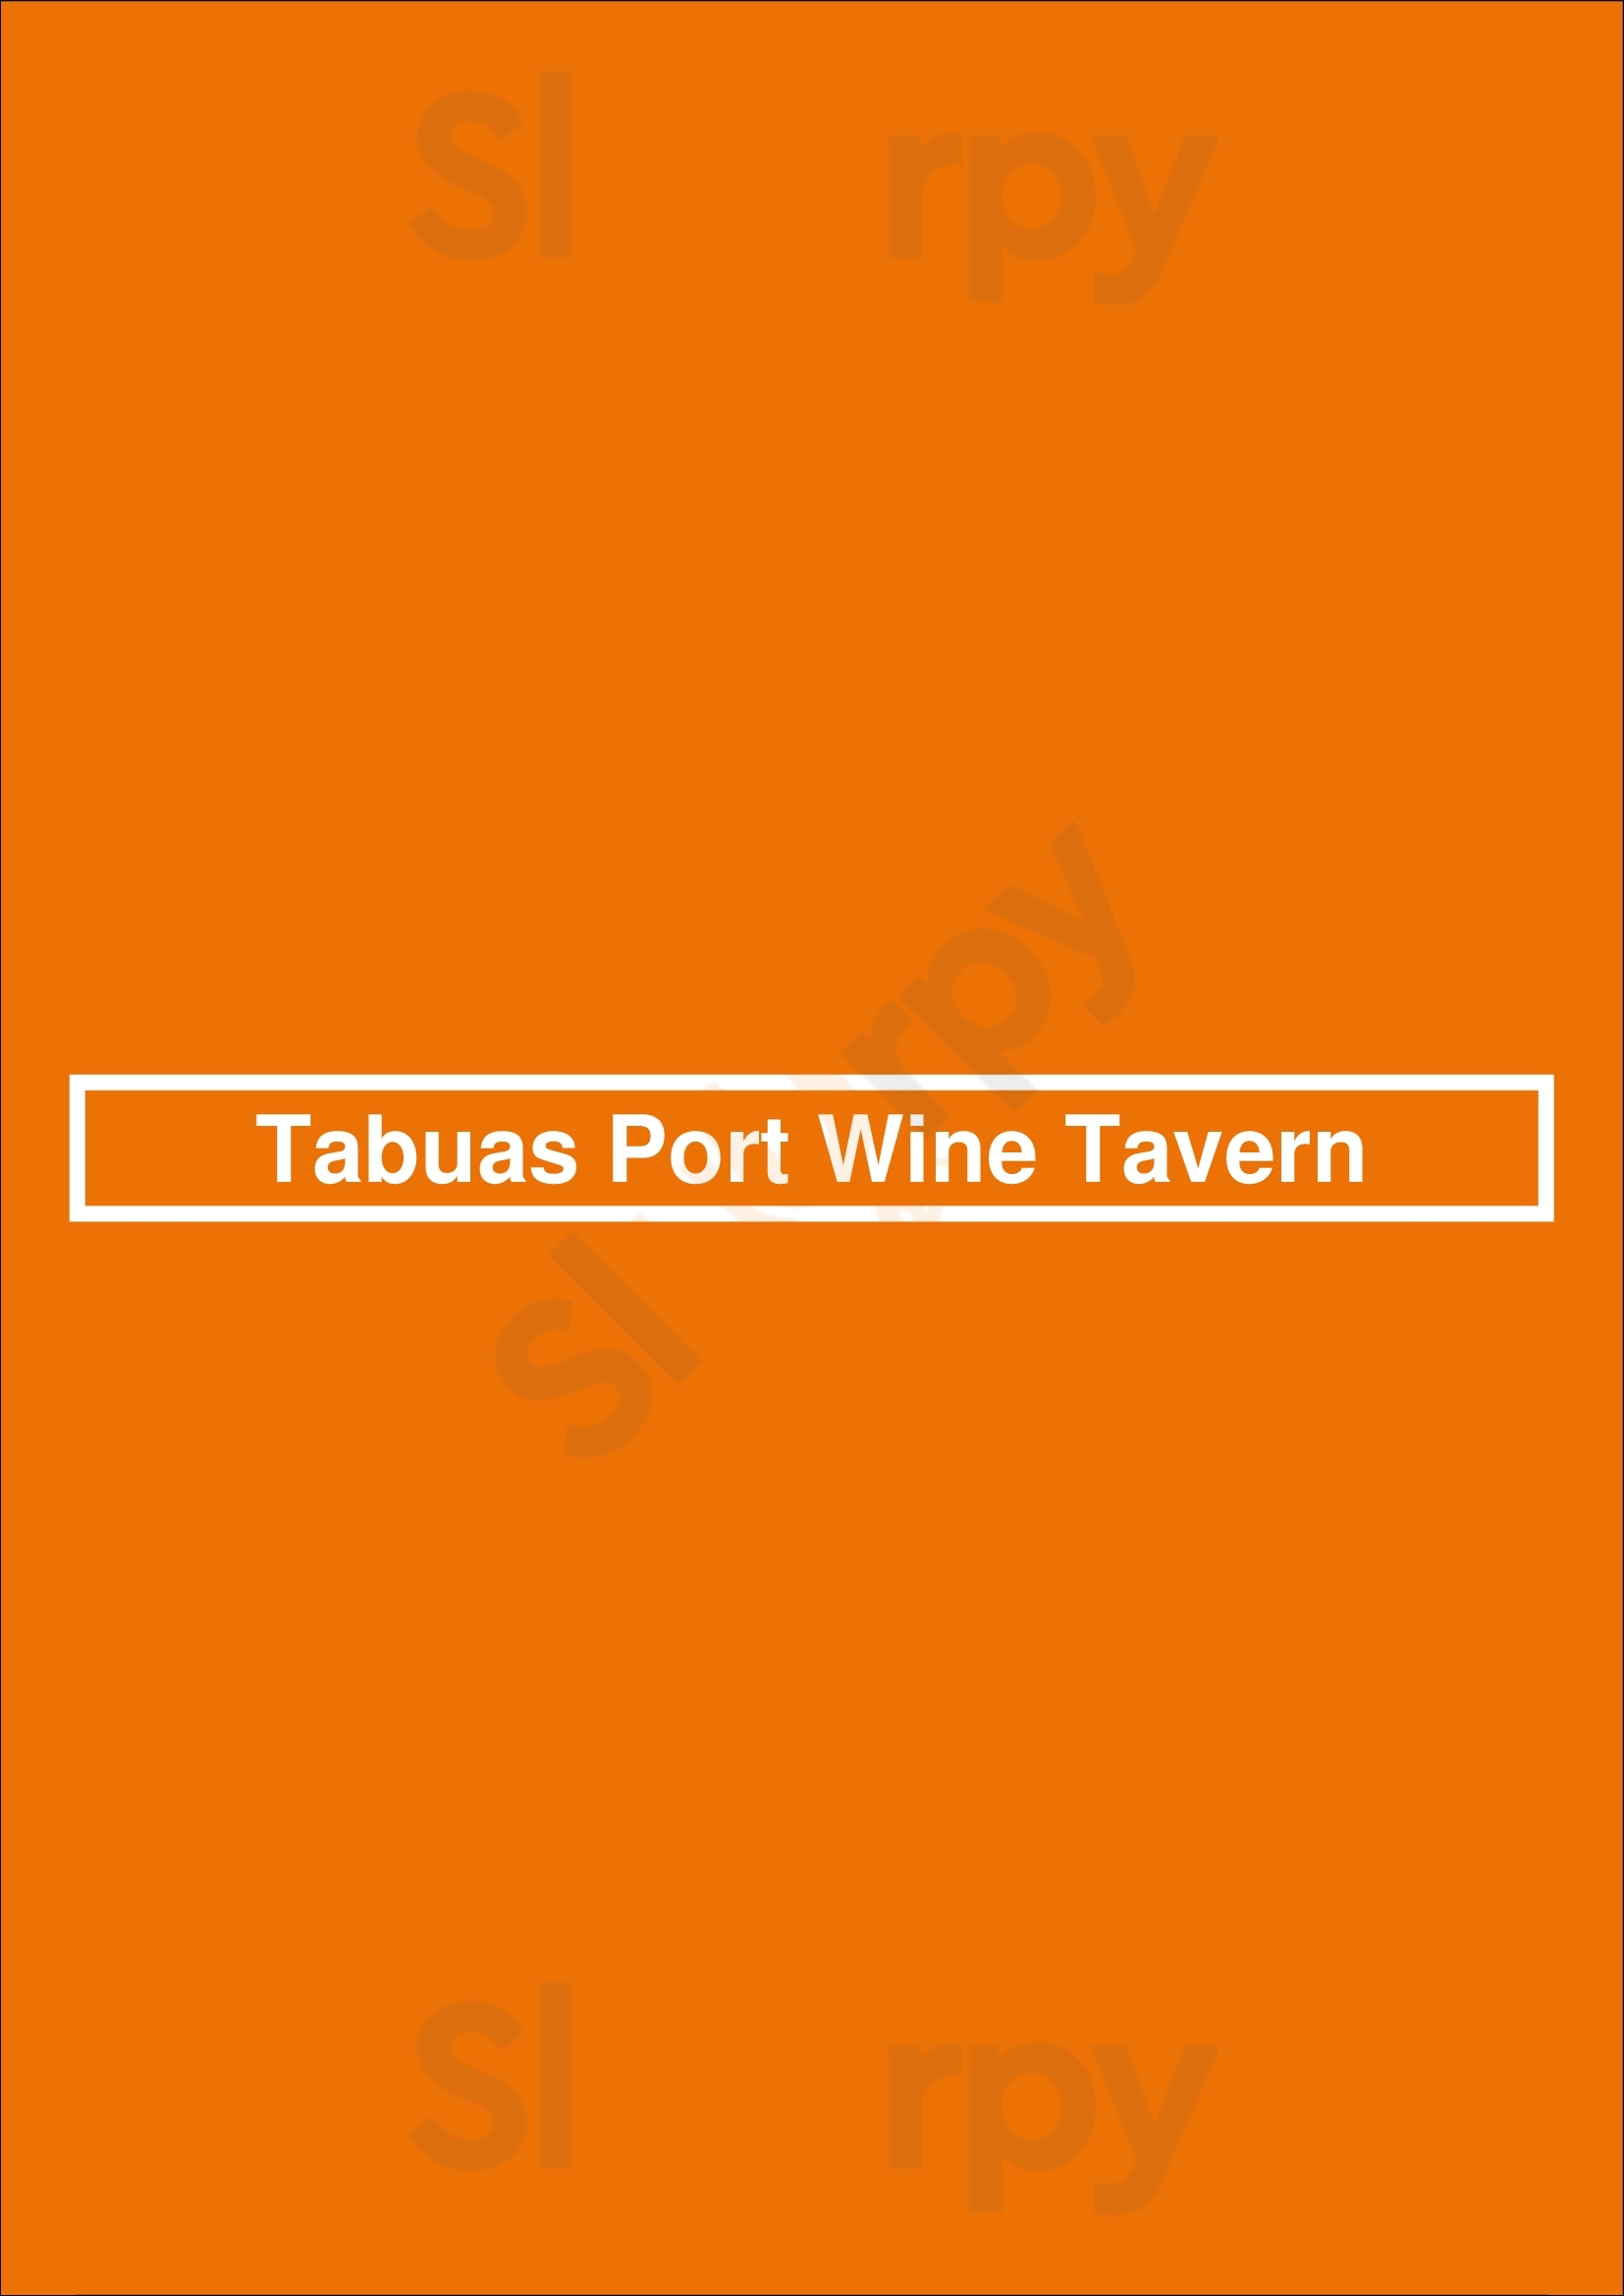 Tábuas Porto Wine Tavern Lisboa Menu - 1